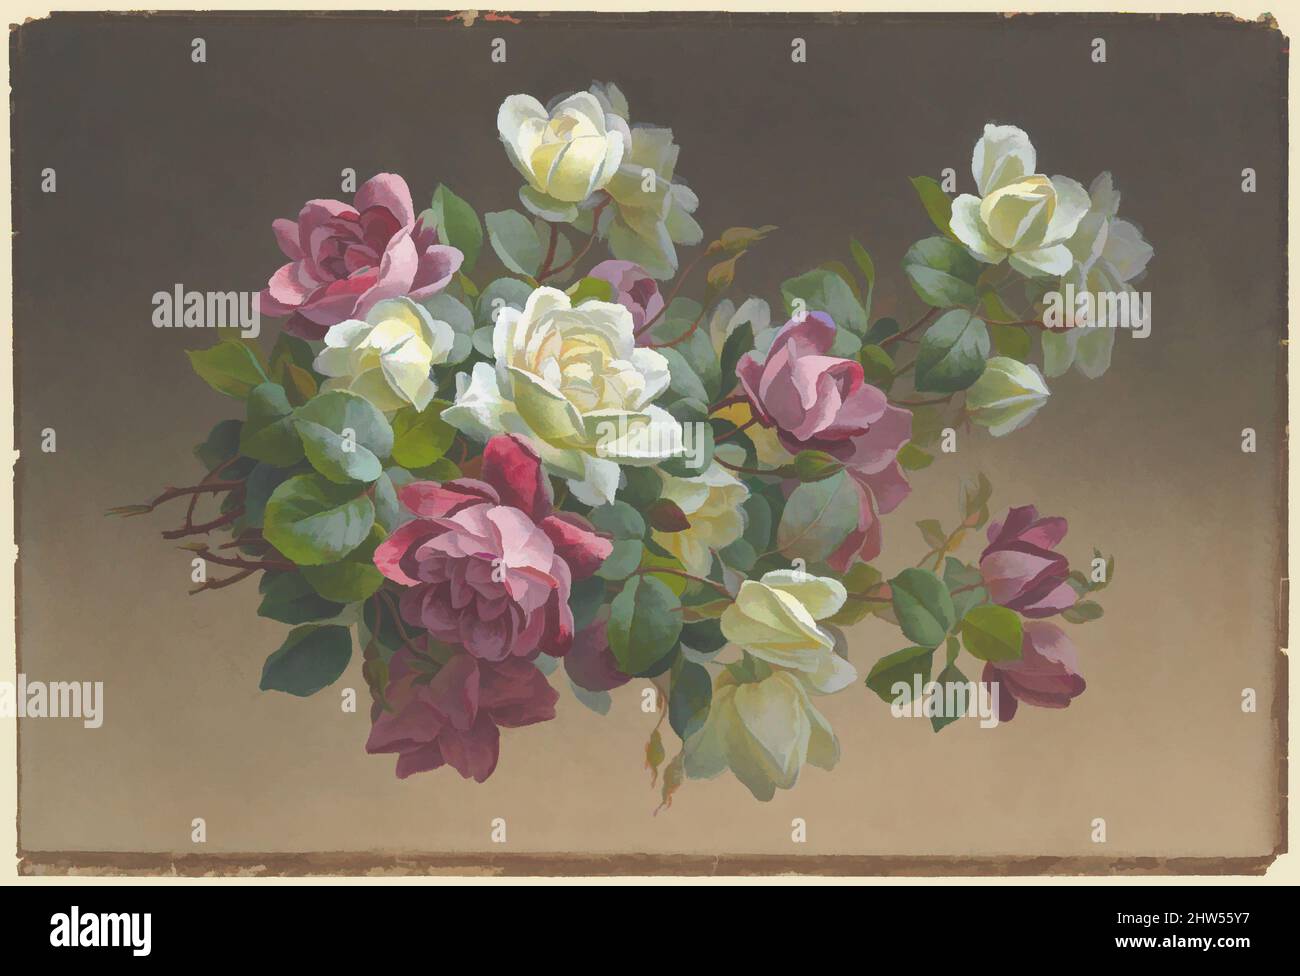 2 rosen -Fotos und -Bildmaterial in hoher Auflösung – Alamy